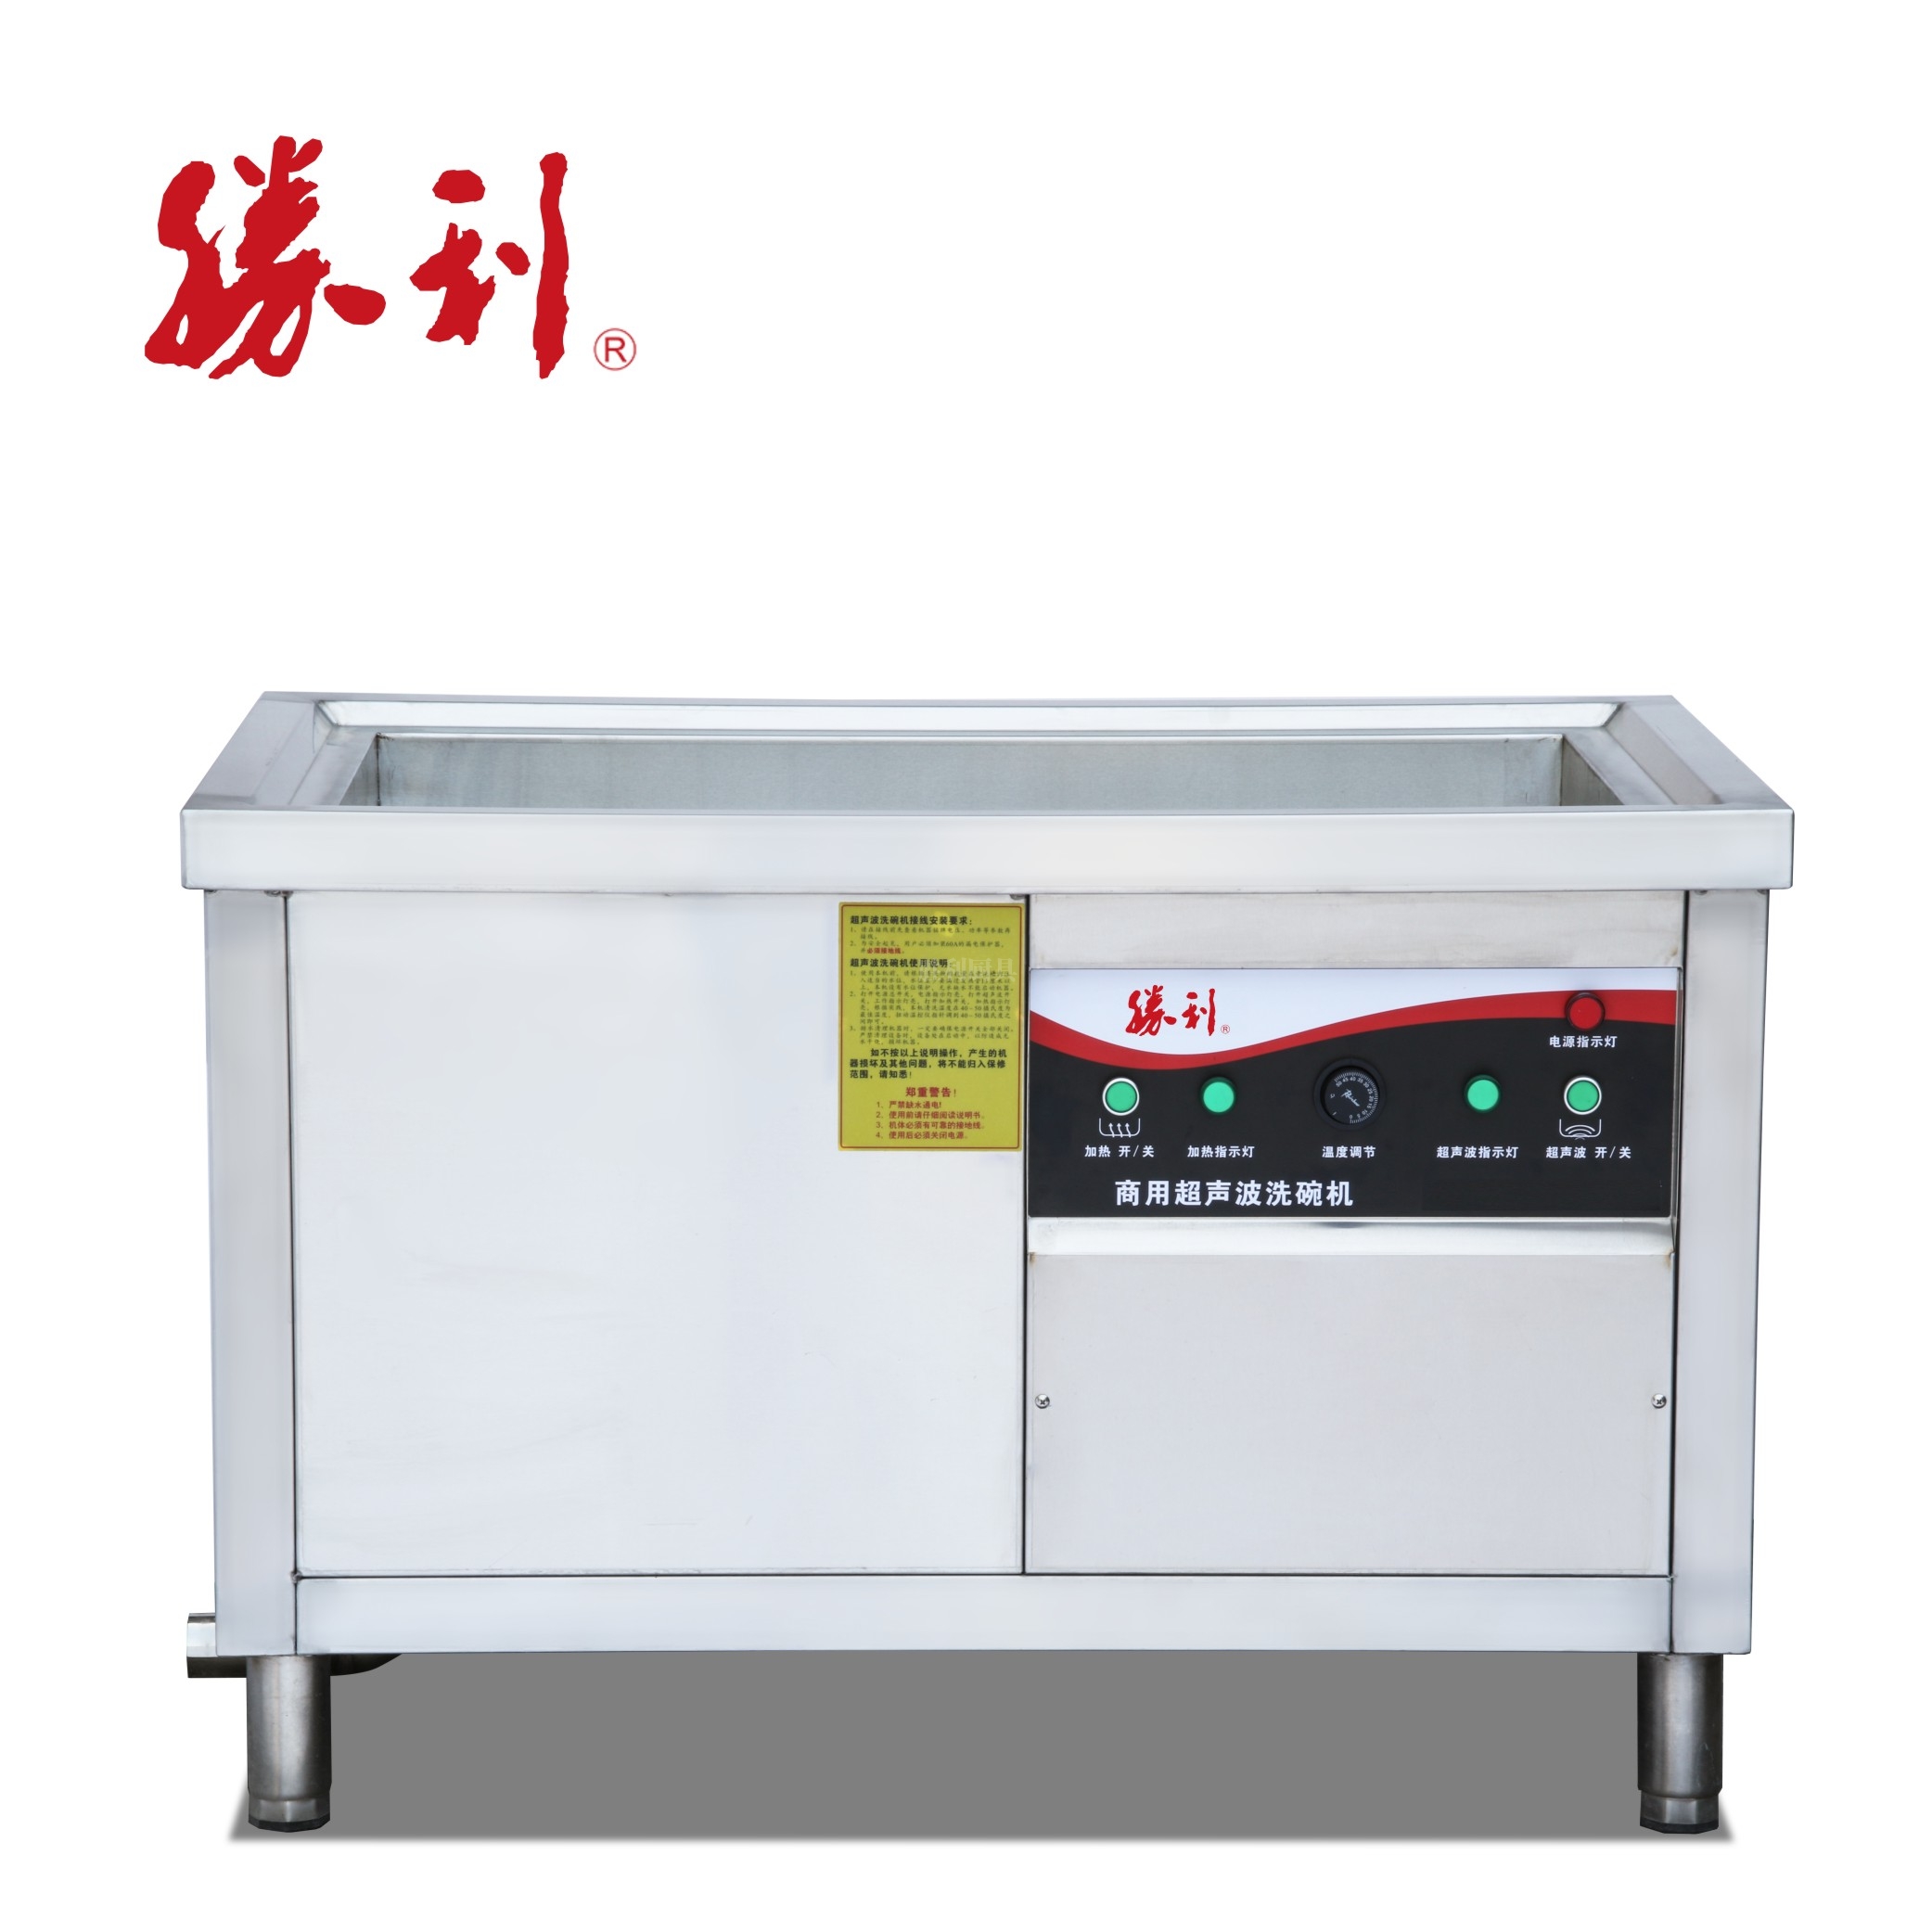 SL-CSX15A系列商用超声波洗碗机